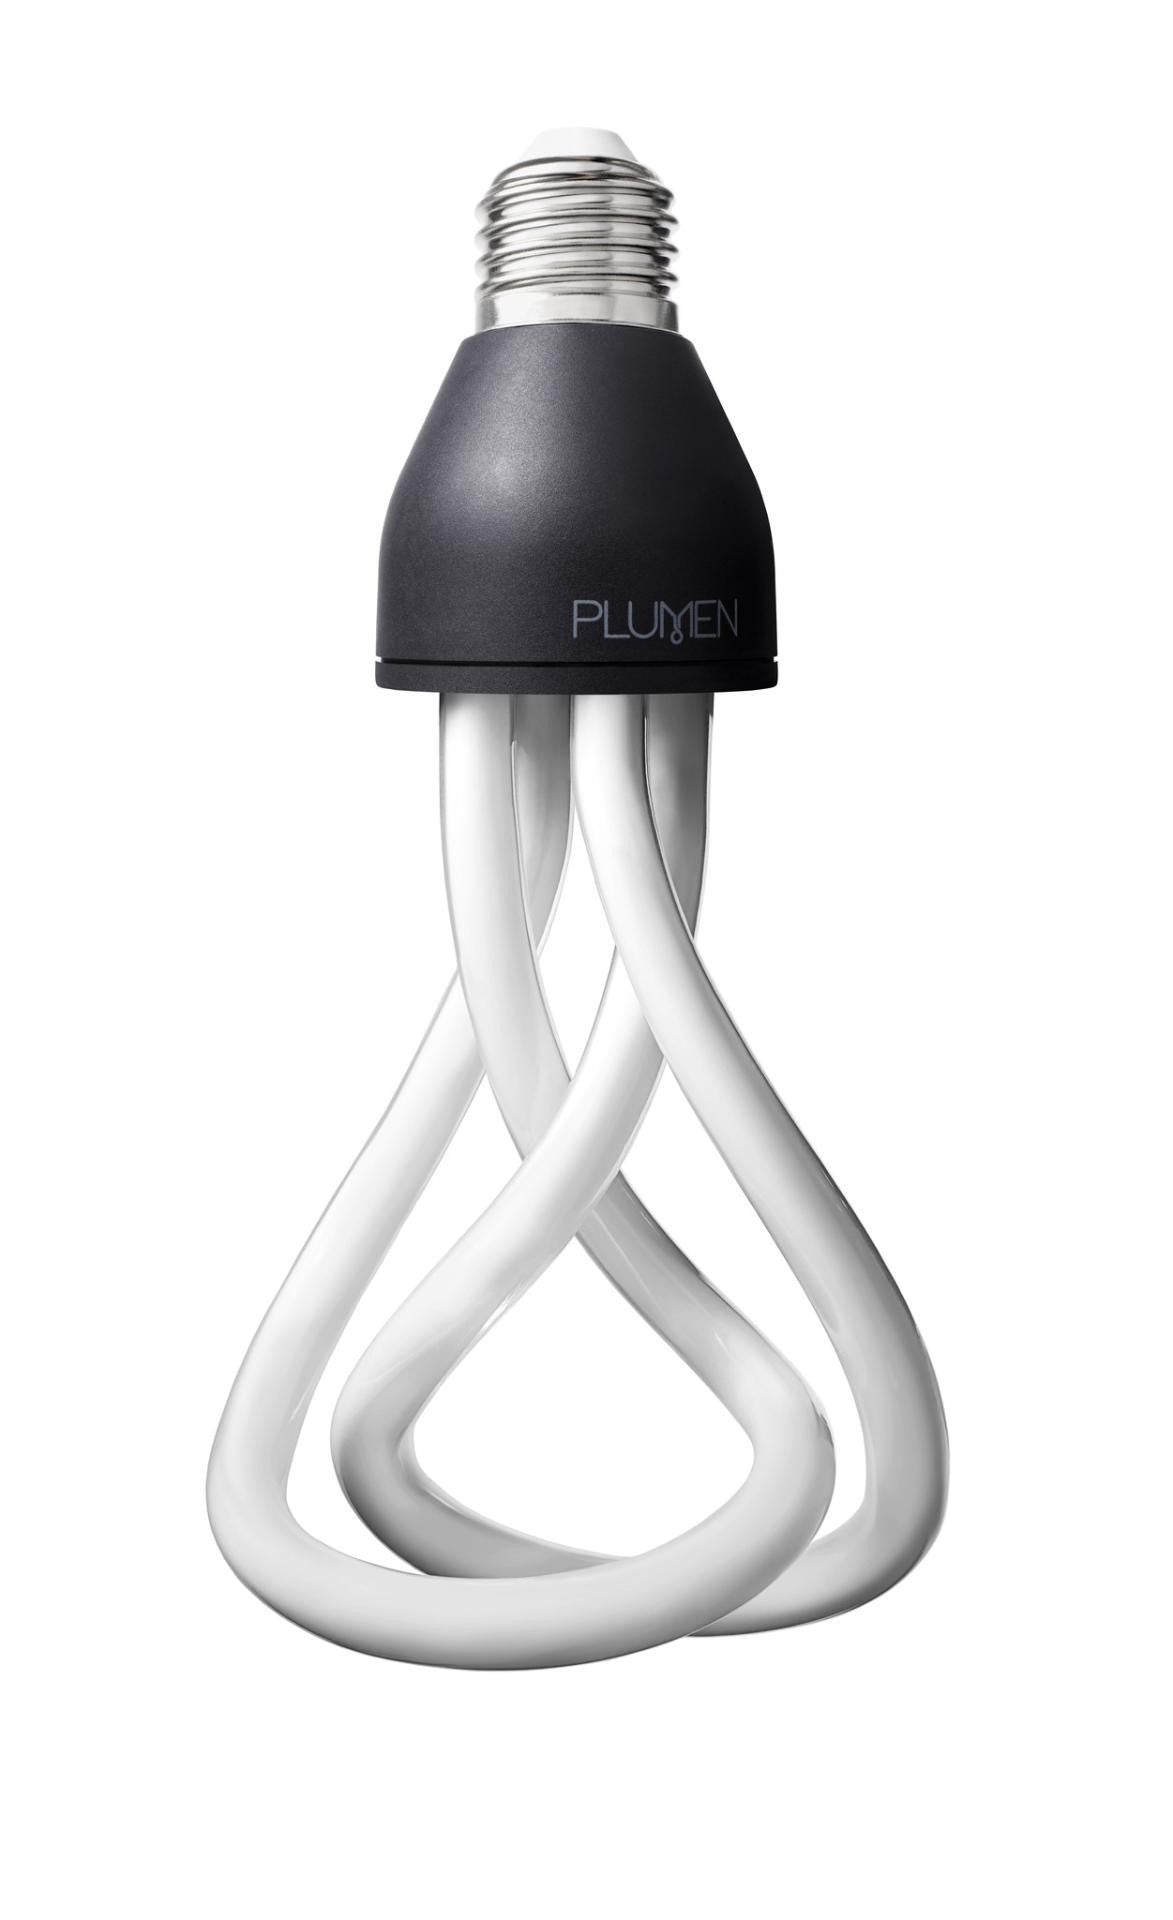 Plumen Light Bulb